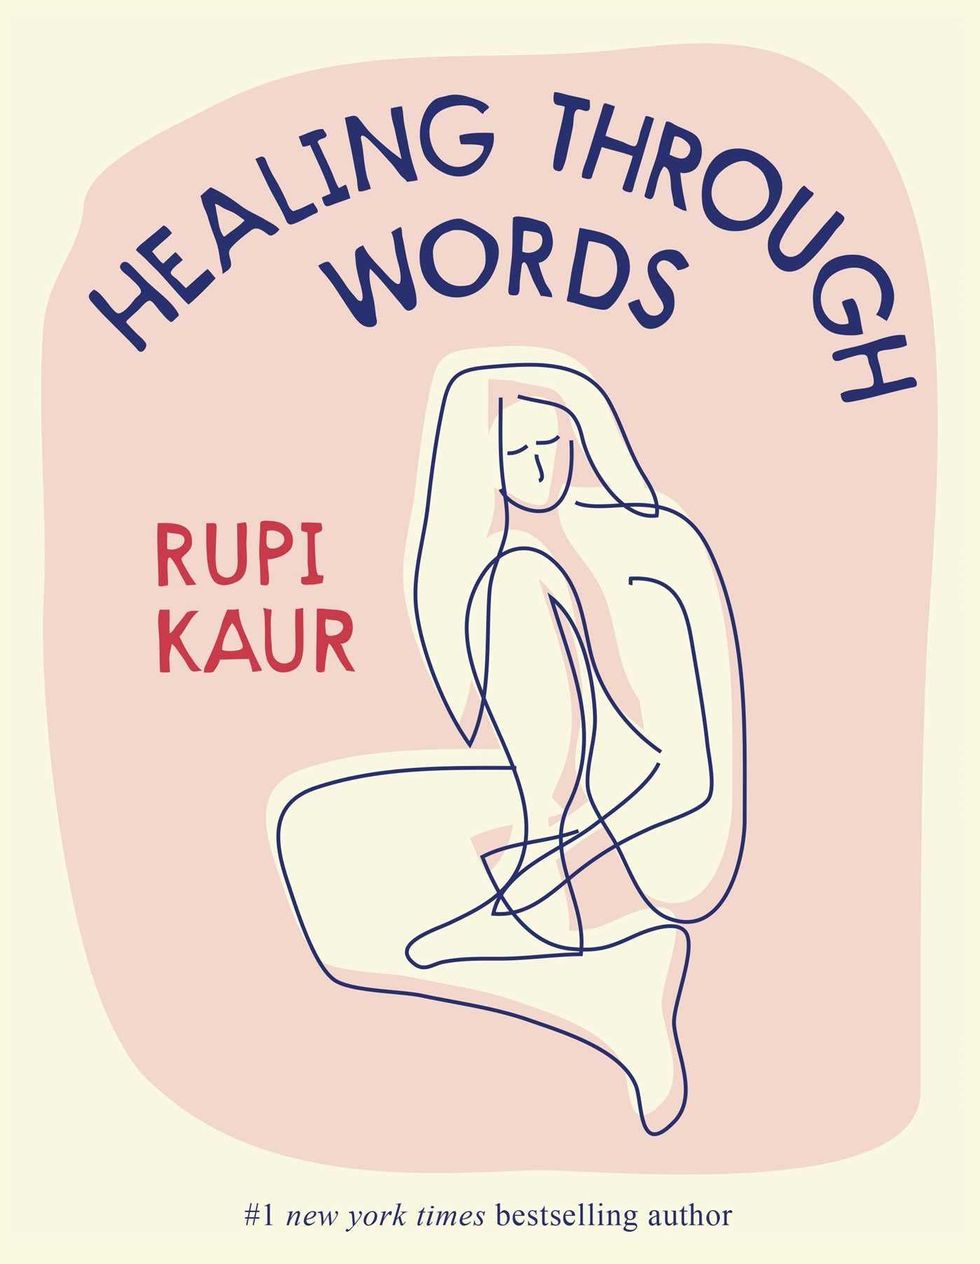 <i>Healing Through Words,</i> by Rupi Kaur